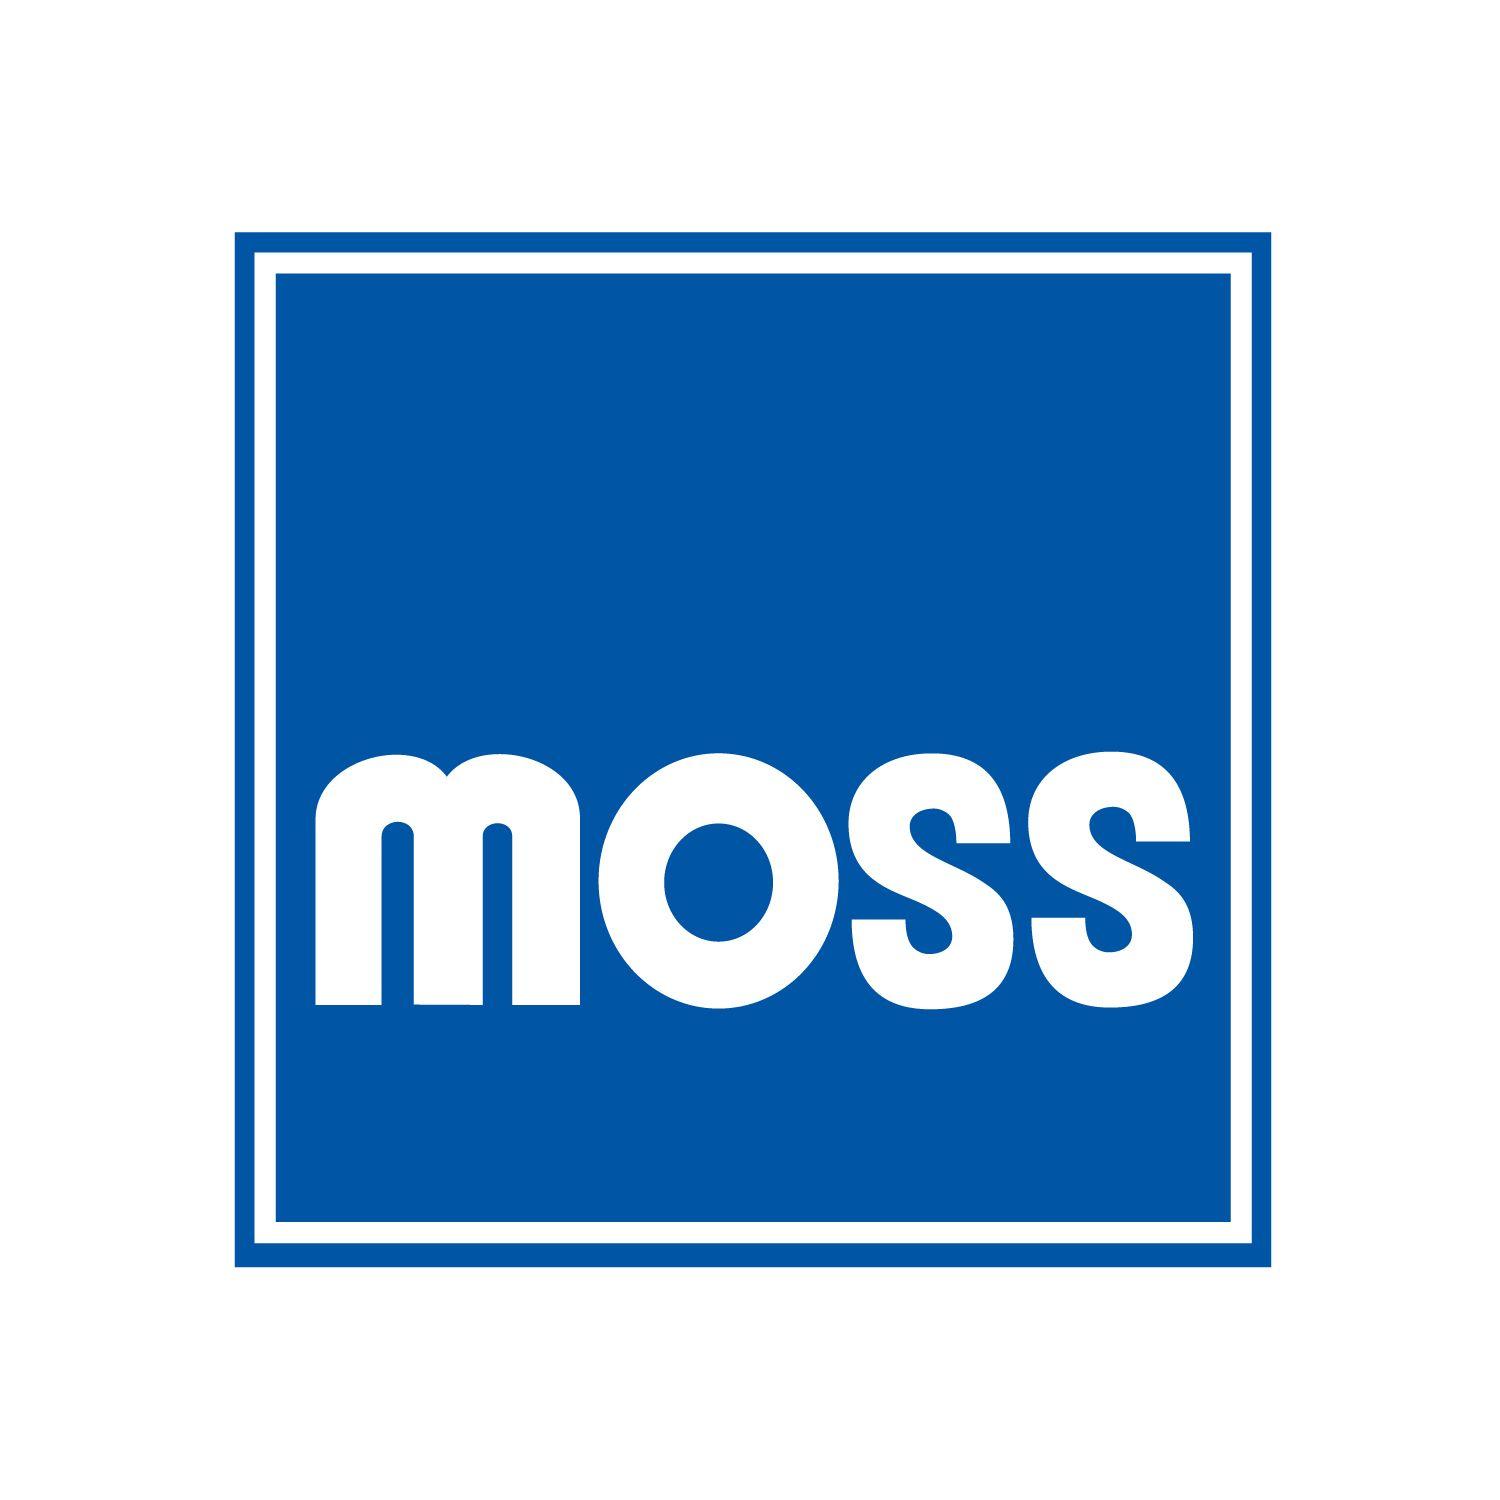 Moss Logo - Moss Motors Logos | Moss Motors